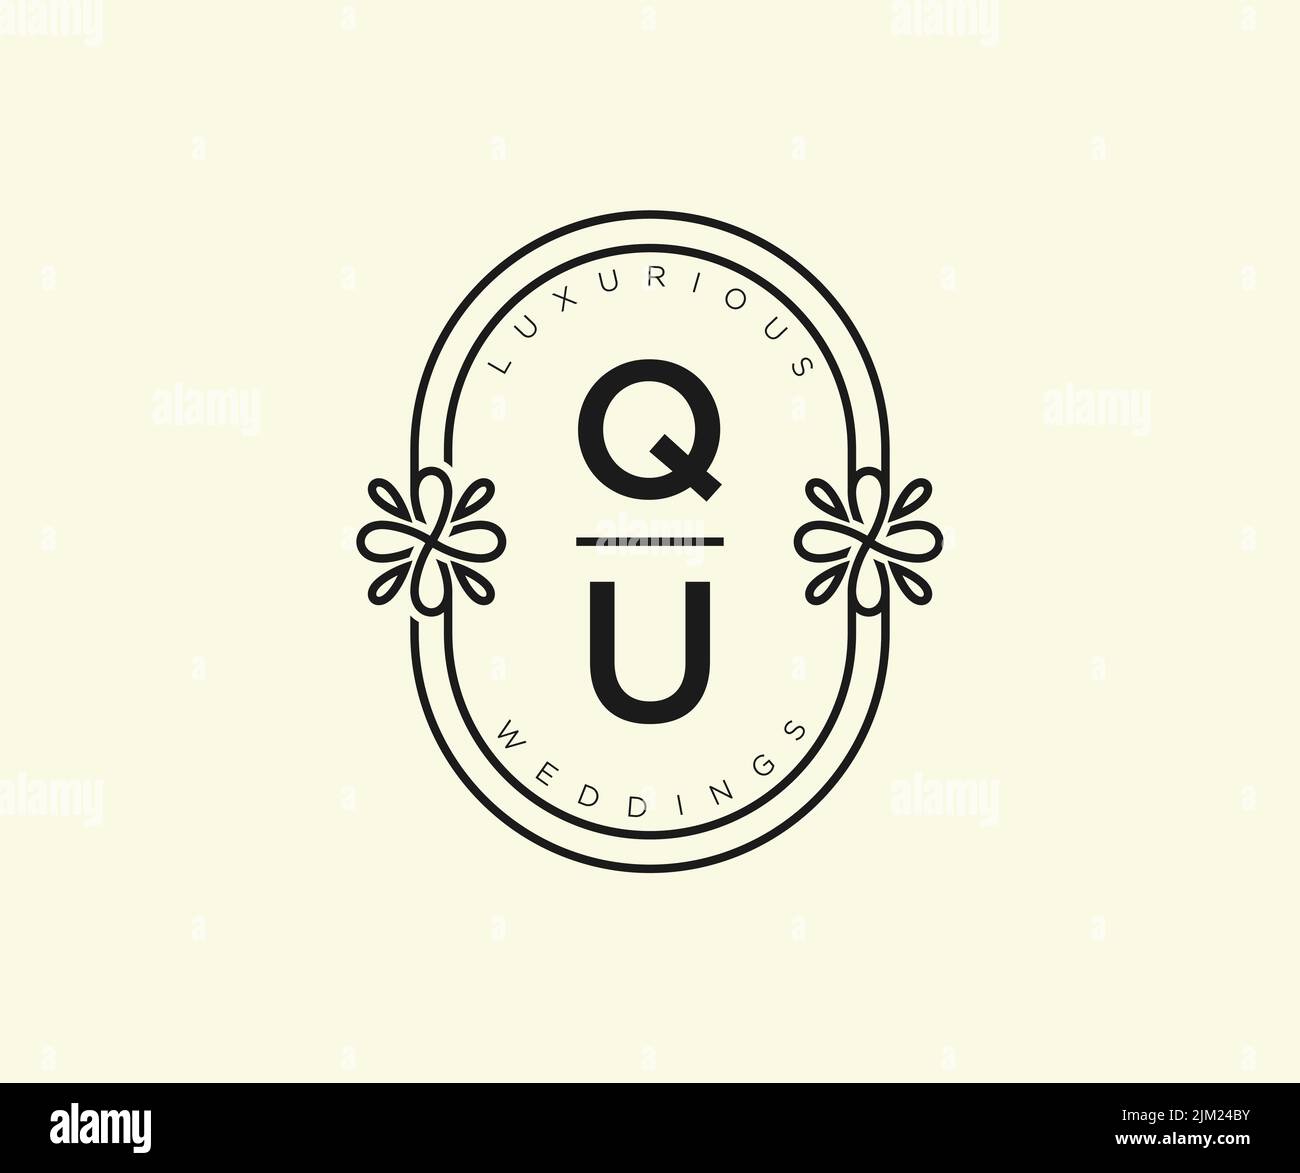 QUInitialen Brief Hochzeit Monogramm Logos Vorlage, handgezeichnete moderne minimalistische und florale Vorlagen für Einladungskarten, Save the Date, elegant Stock Vektor